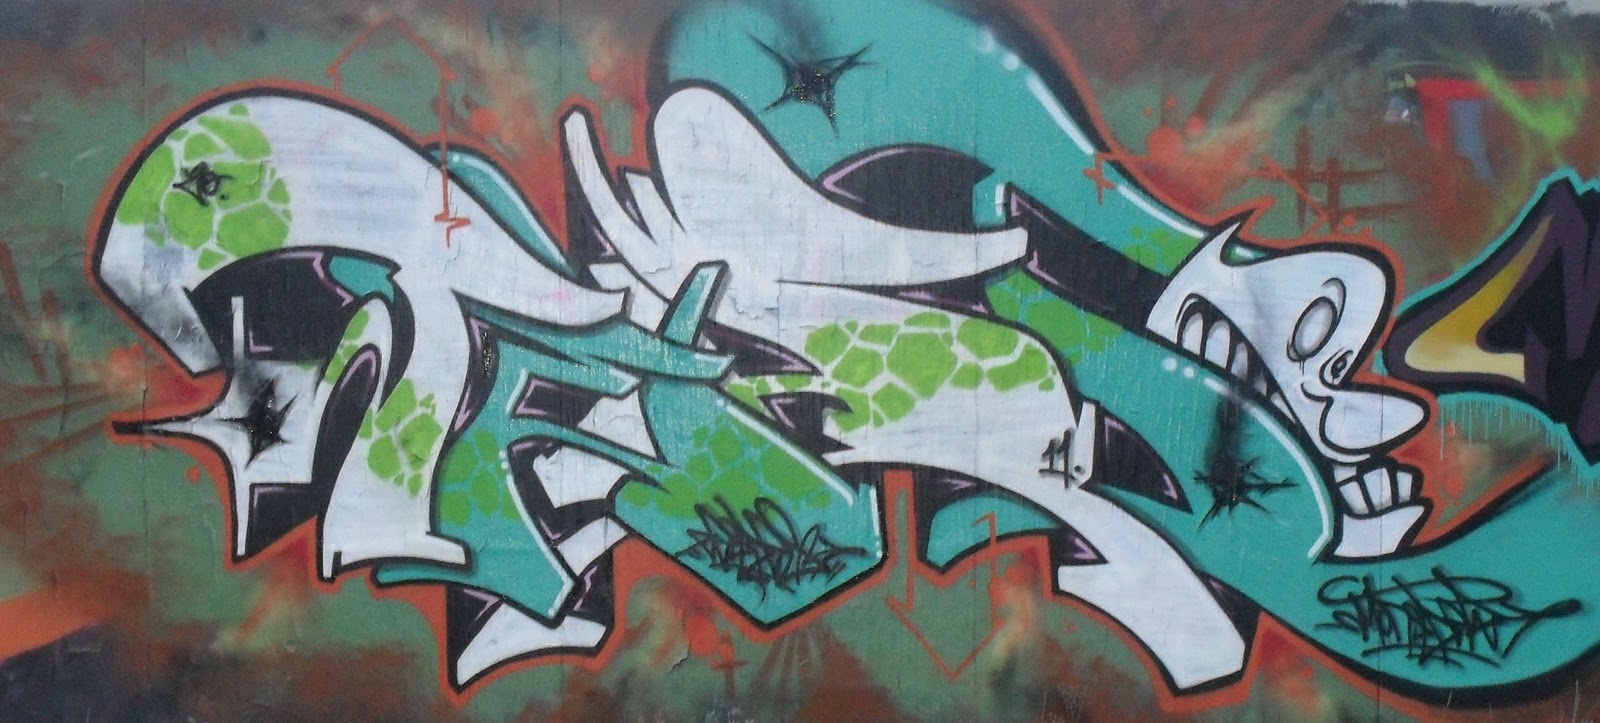 Negative Effects Of Graffiti Graffiti And Modern Culture